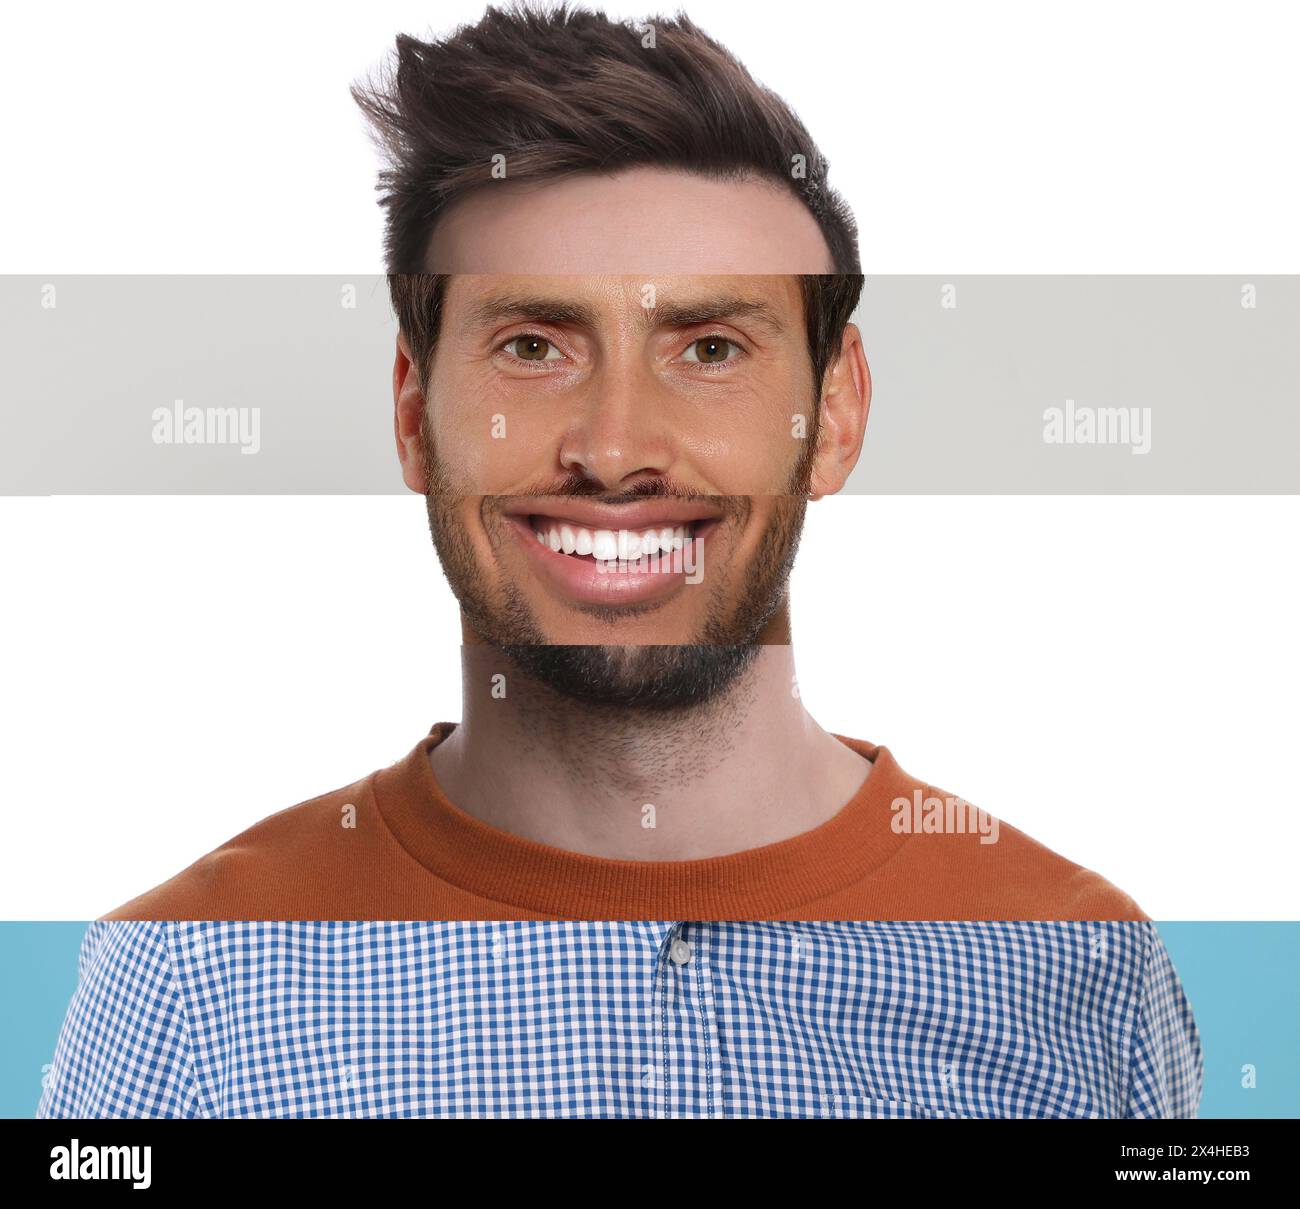 Kombiniertes Porträt des Mannes auf farbigem Hintergrund. Collage mit Teilen von Fotos verschiedener Personen Stockfoto